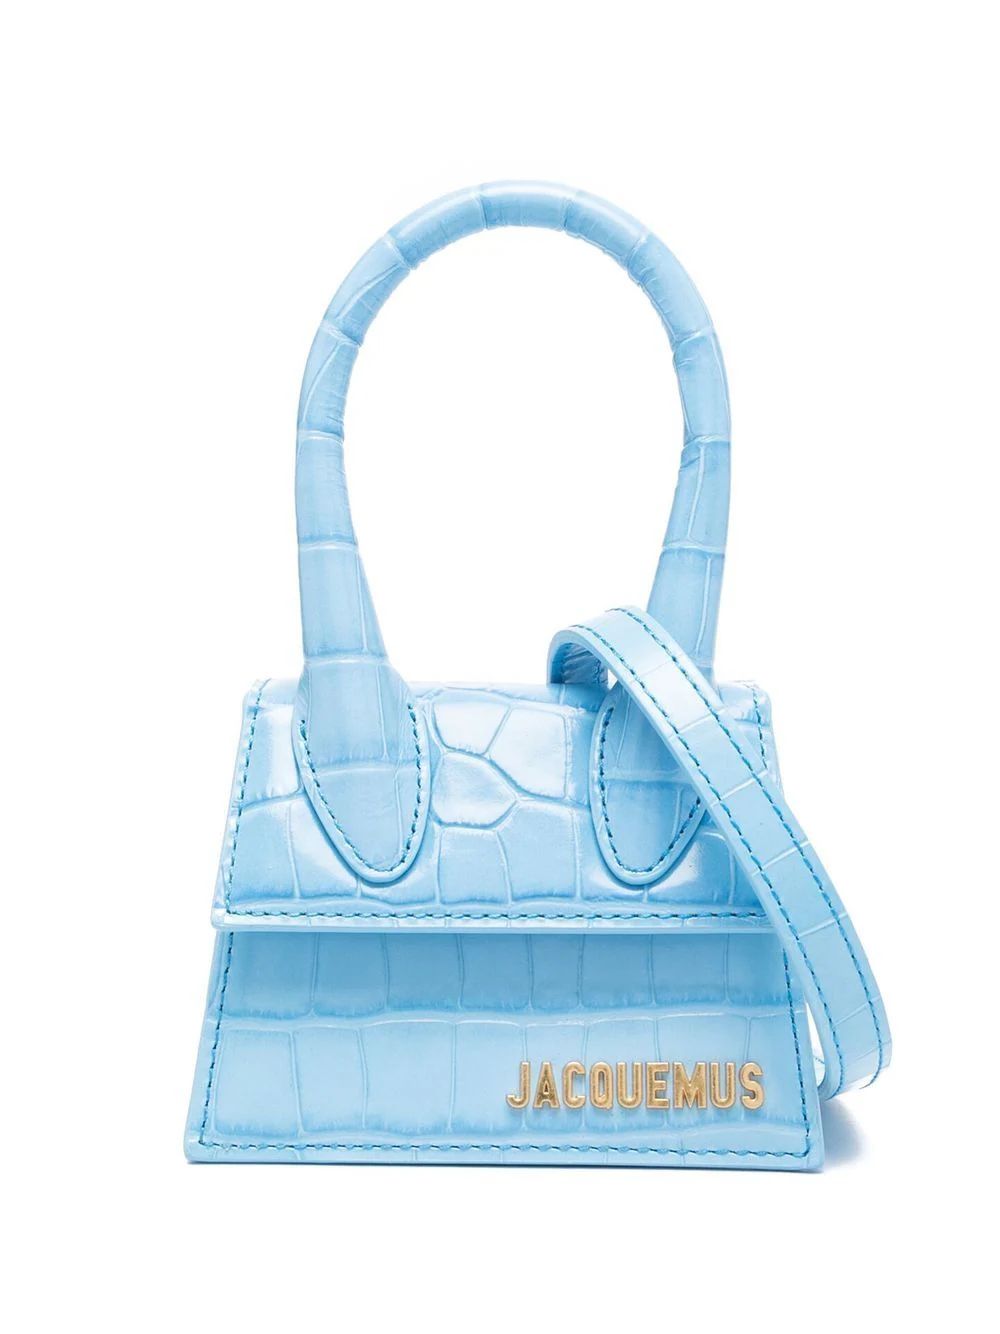 Jacquemus Le Chiquito Mini Leather Bag - Farfetch | Farfetch Global